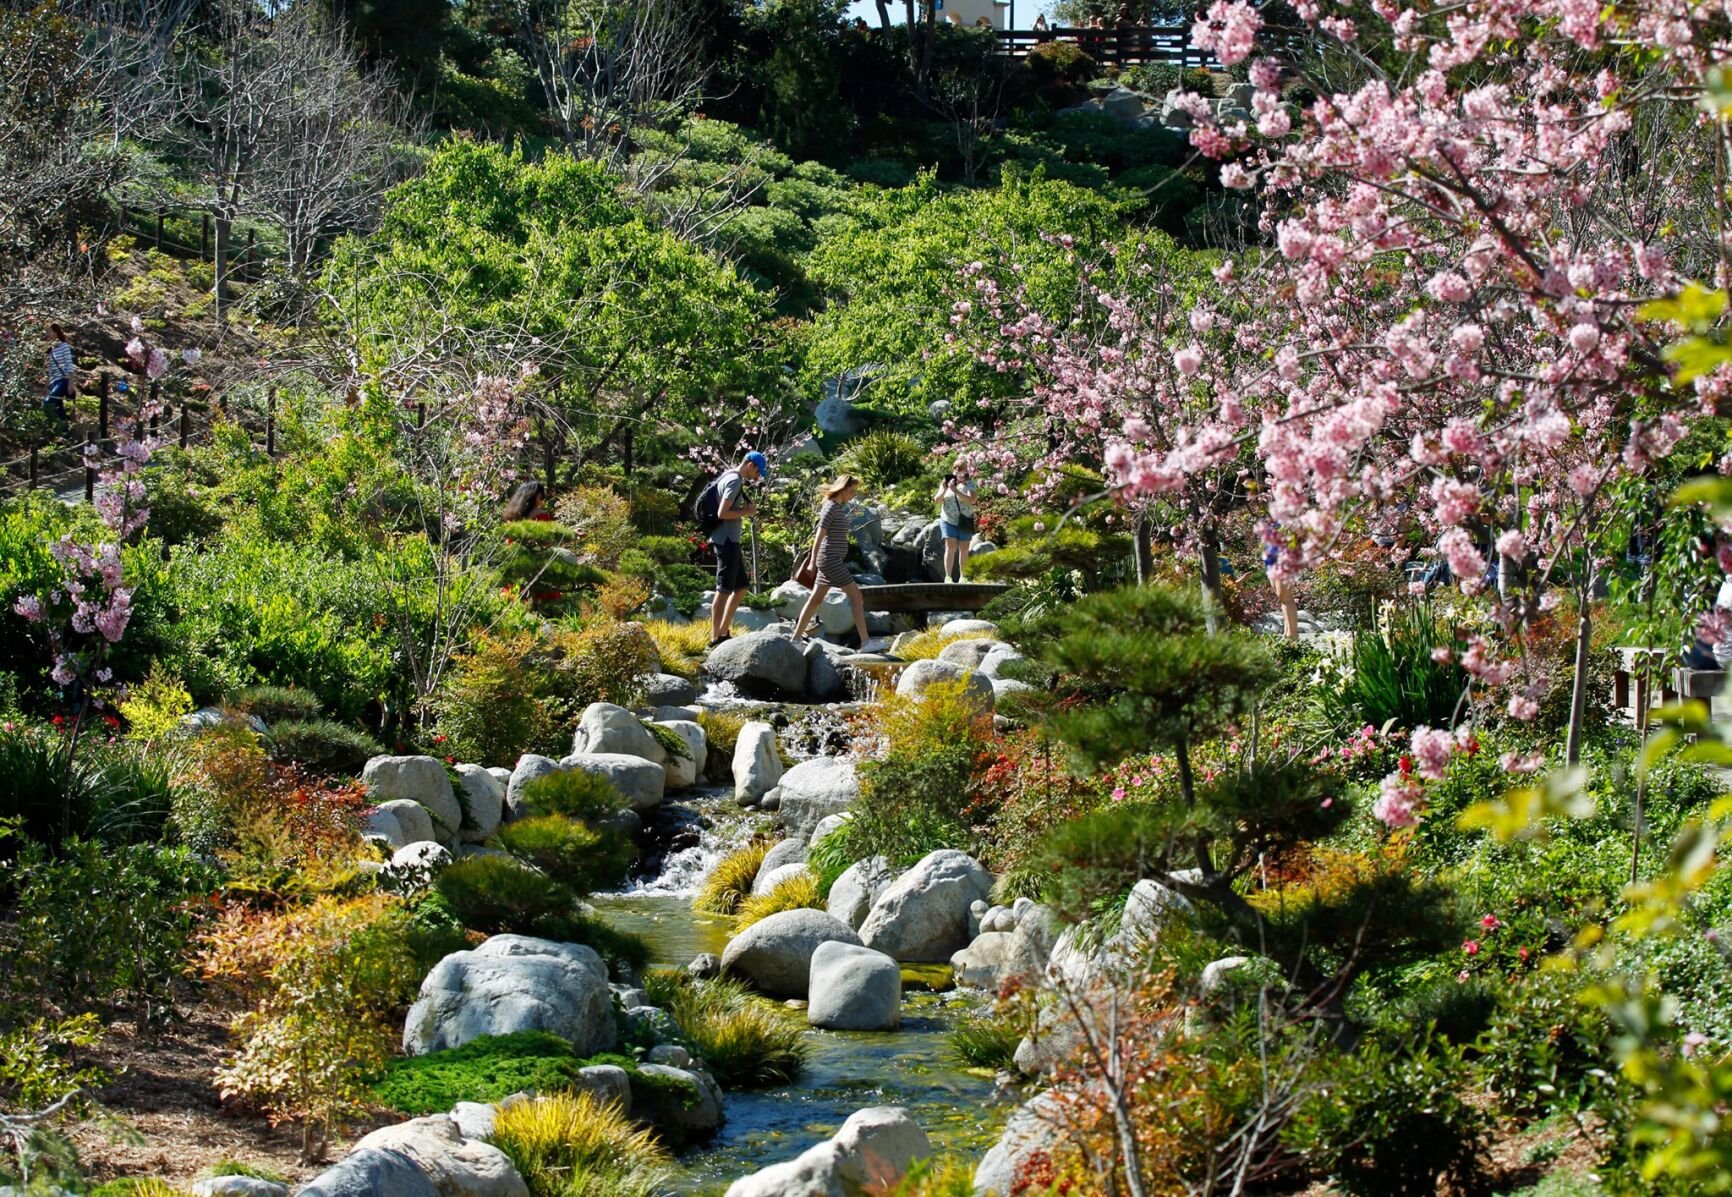 Japanese Friendship Gardens, San Diego